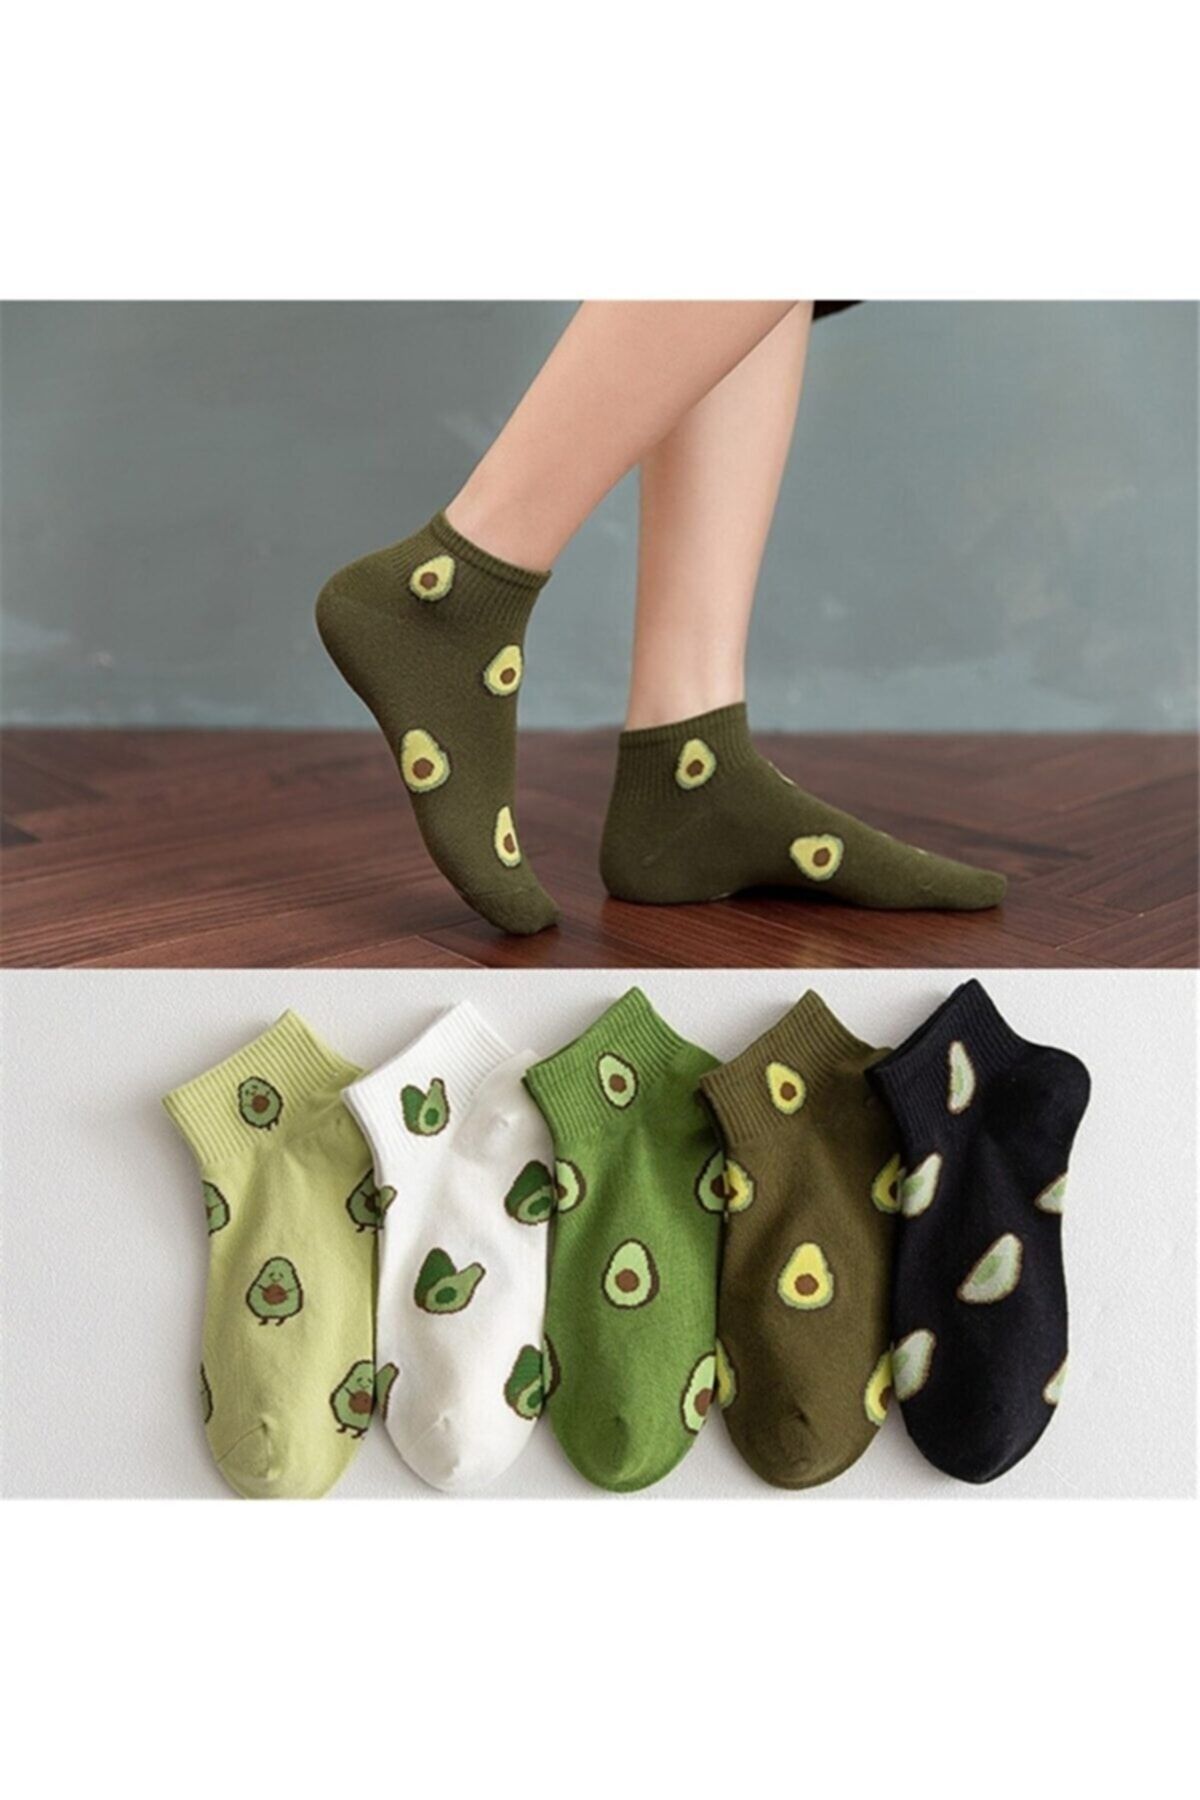 Meguca Socks Kadın Çok Renkli Avokado Desenli Yarım Konç Kolej Çorap Seti 5 Çift